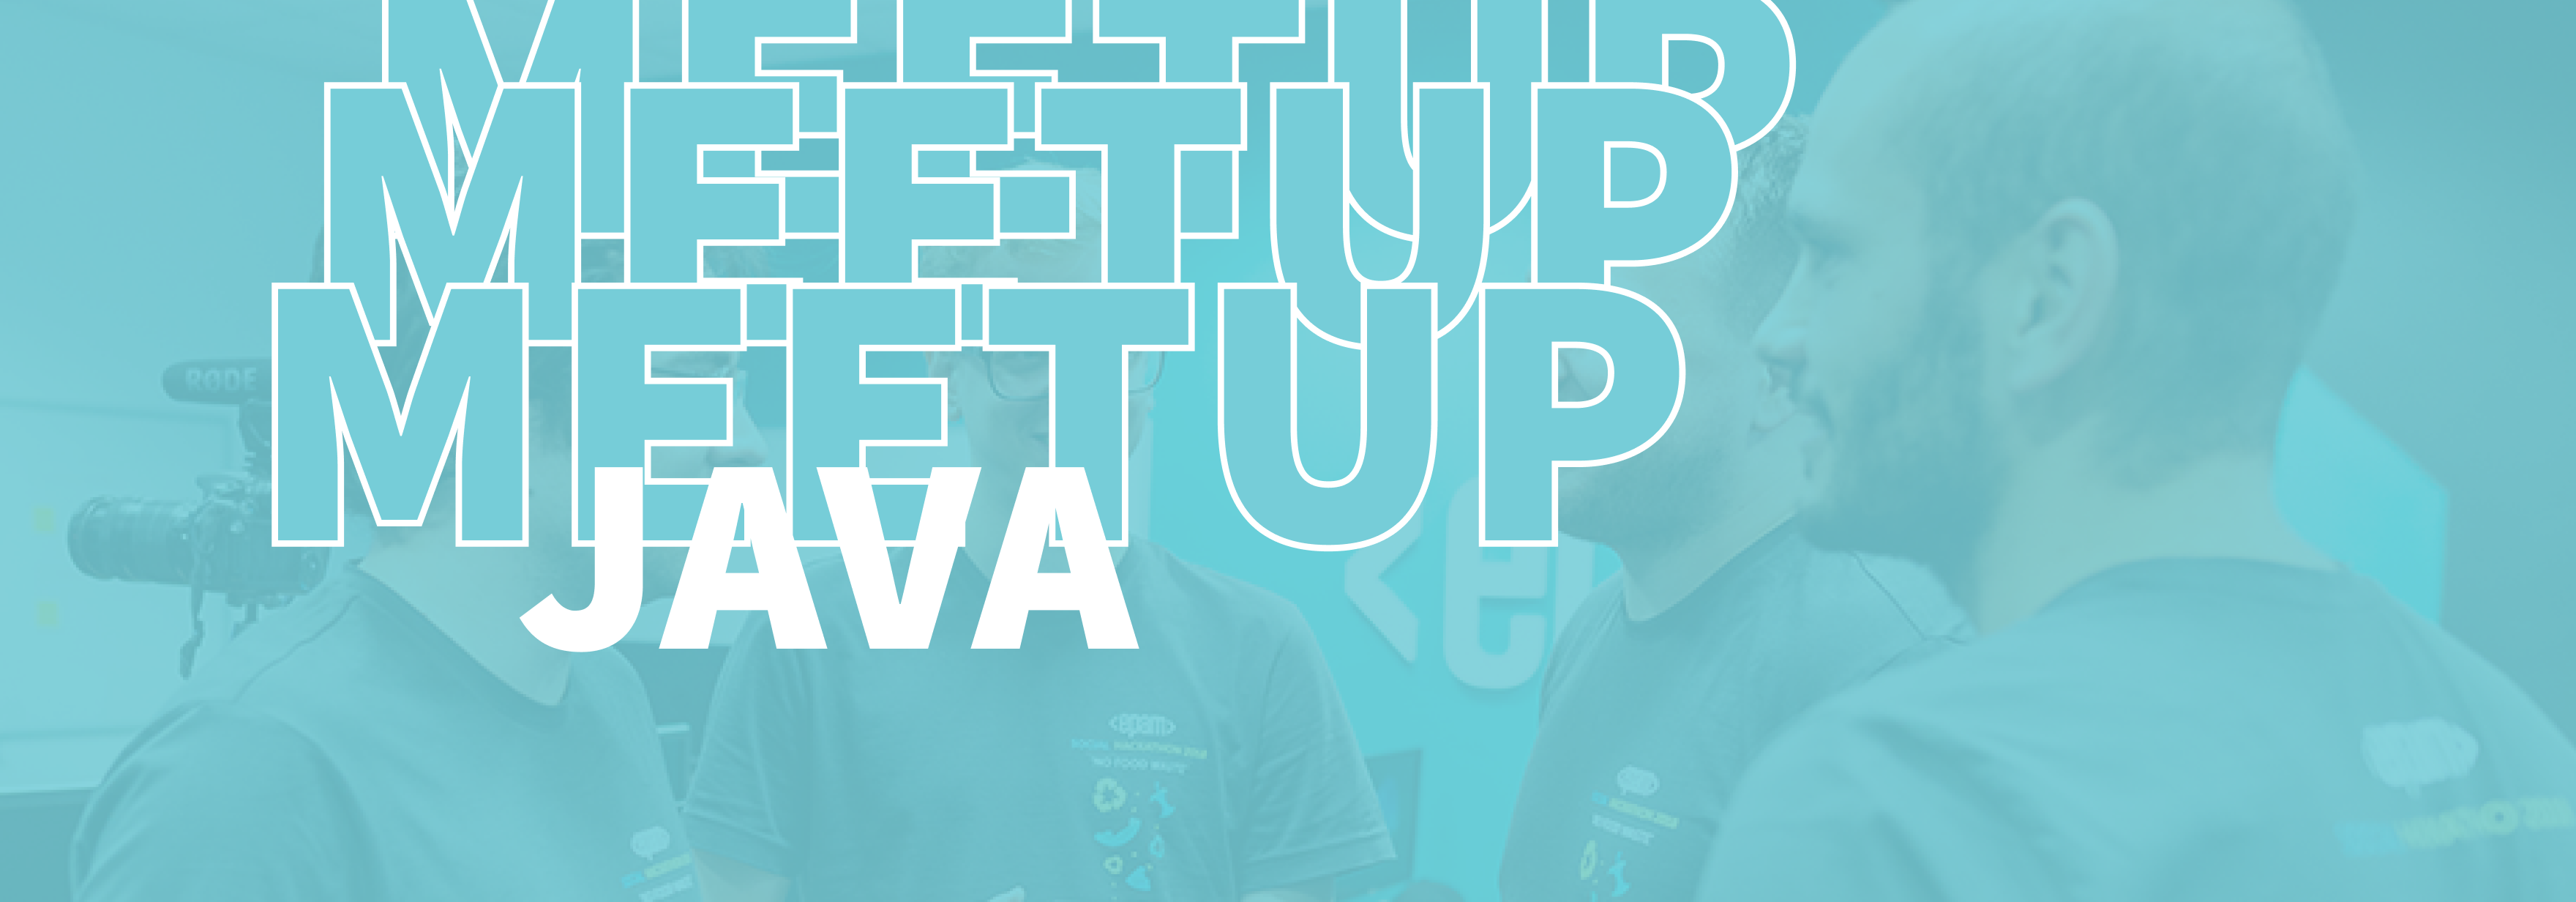 Java community meetup